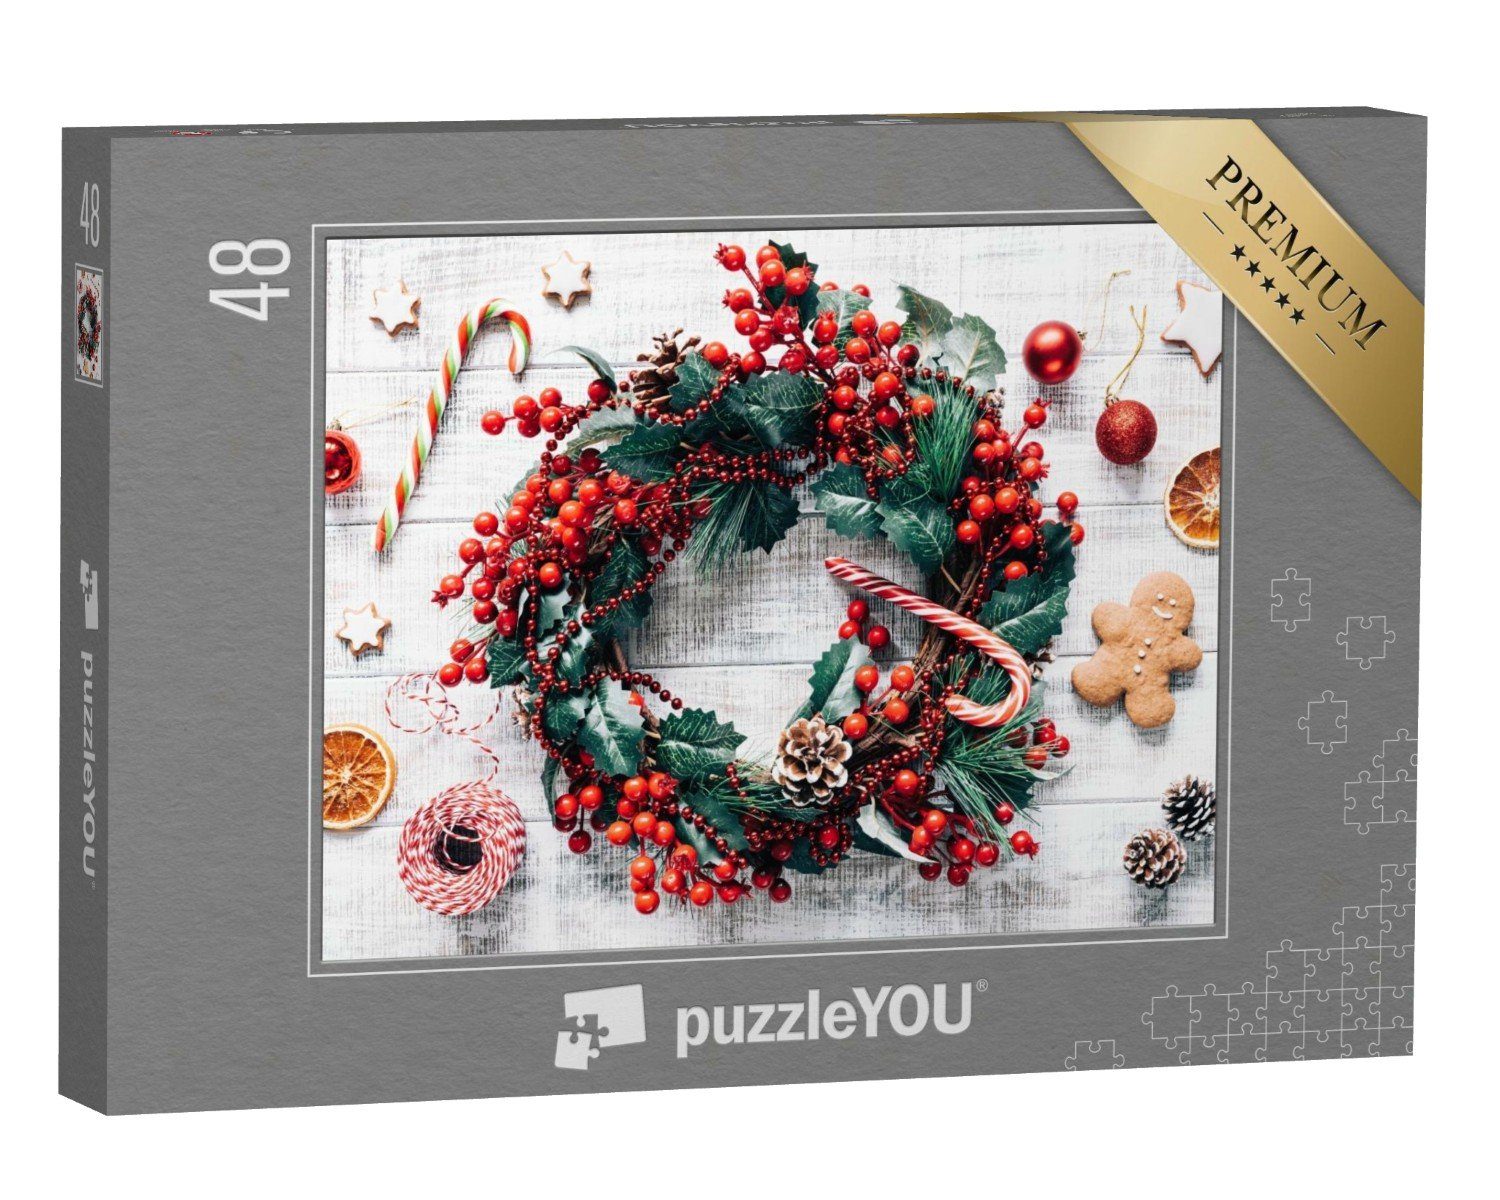 puzzleYOU Puzzle Weihnachten: Weihnachtsbaumschmuck und Lebkuchen, 48 Puzzleteile, puzzleYOU-Kollektionen Weihnachten